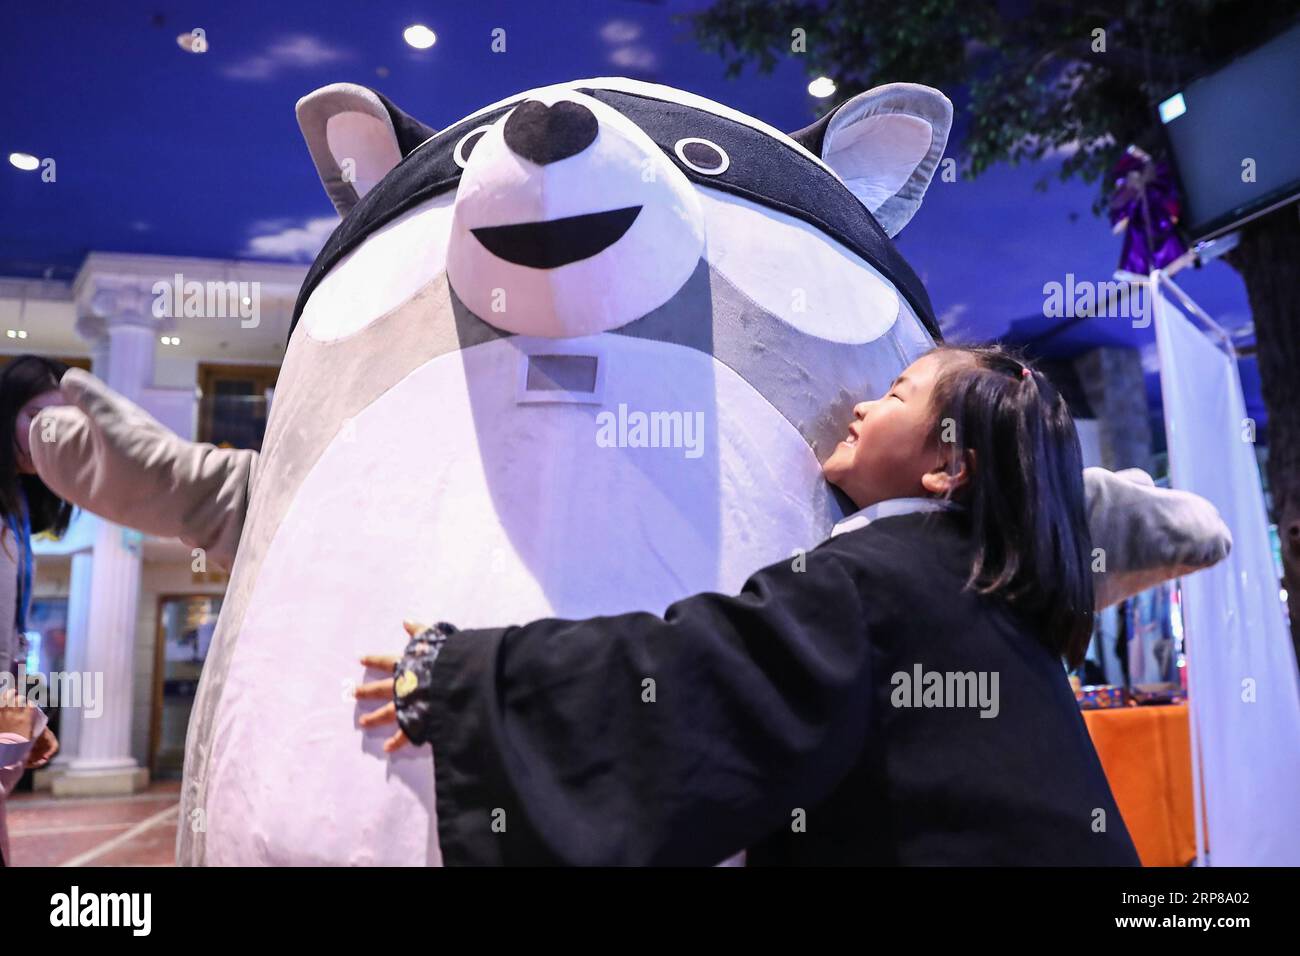 190223 -- PECHINO, 23 febbraio 2019 Xinhua -- Una ragazza abbraccia un orso raro, una figura di cartone animato per sensibilizzare l'opinione pubblica sulle malattie rare, a Pechino, capitale della Cina, 23 febbraio 2019. La dodicesima giornata internazionale delle malattie rare cade il 28 febbraio 2019 con il tema del bridging della salute e dell'assistenza sociale . Xinhua/Zhang Yuwei CHINA-BEIJING-RARE DISEASE-CARTOON FIGURECN PUBLICATIONxNOTxINxCHN Foto Stock